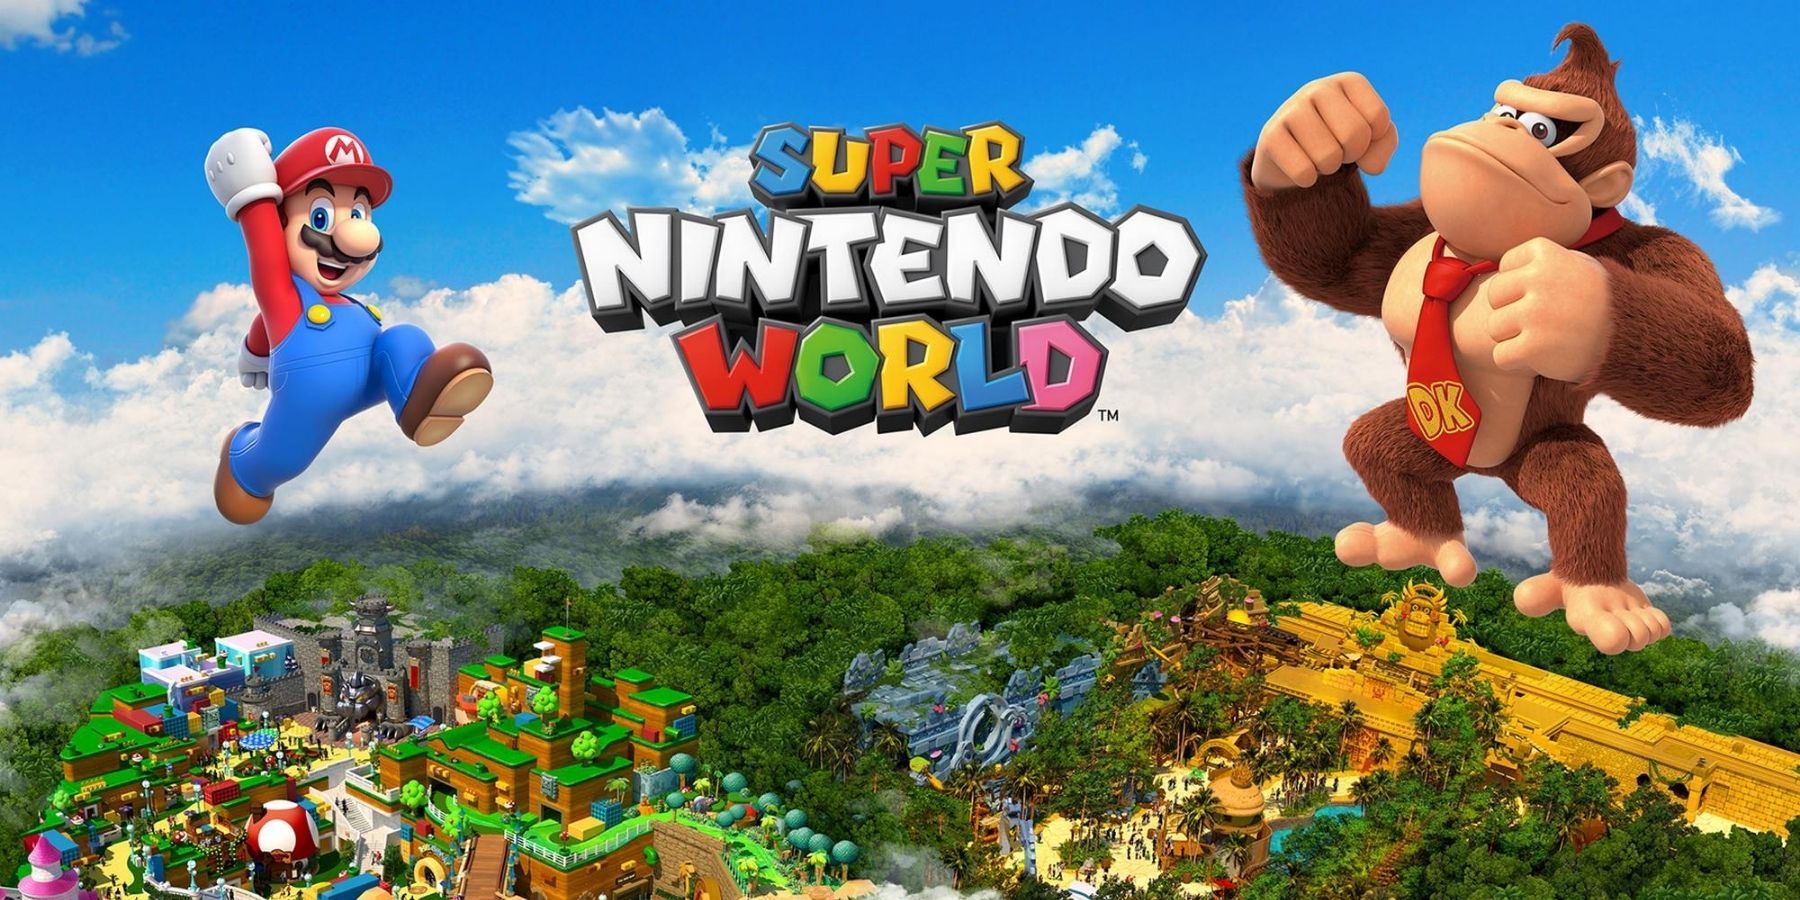 Toutes les attractions supposées de l’extension Donkey Kong de Super Nintendo World